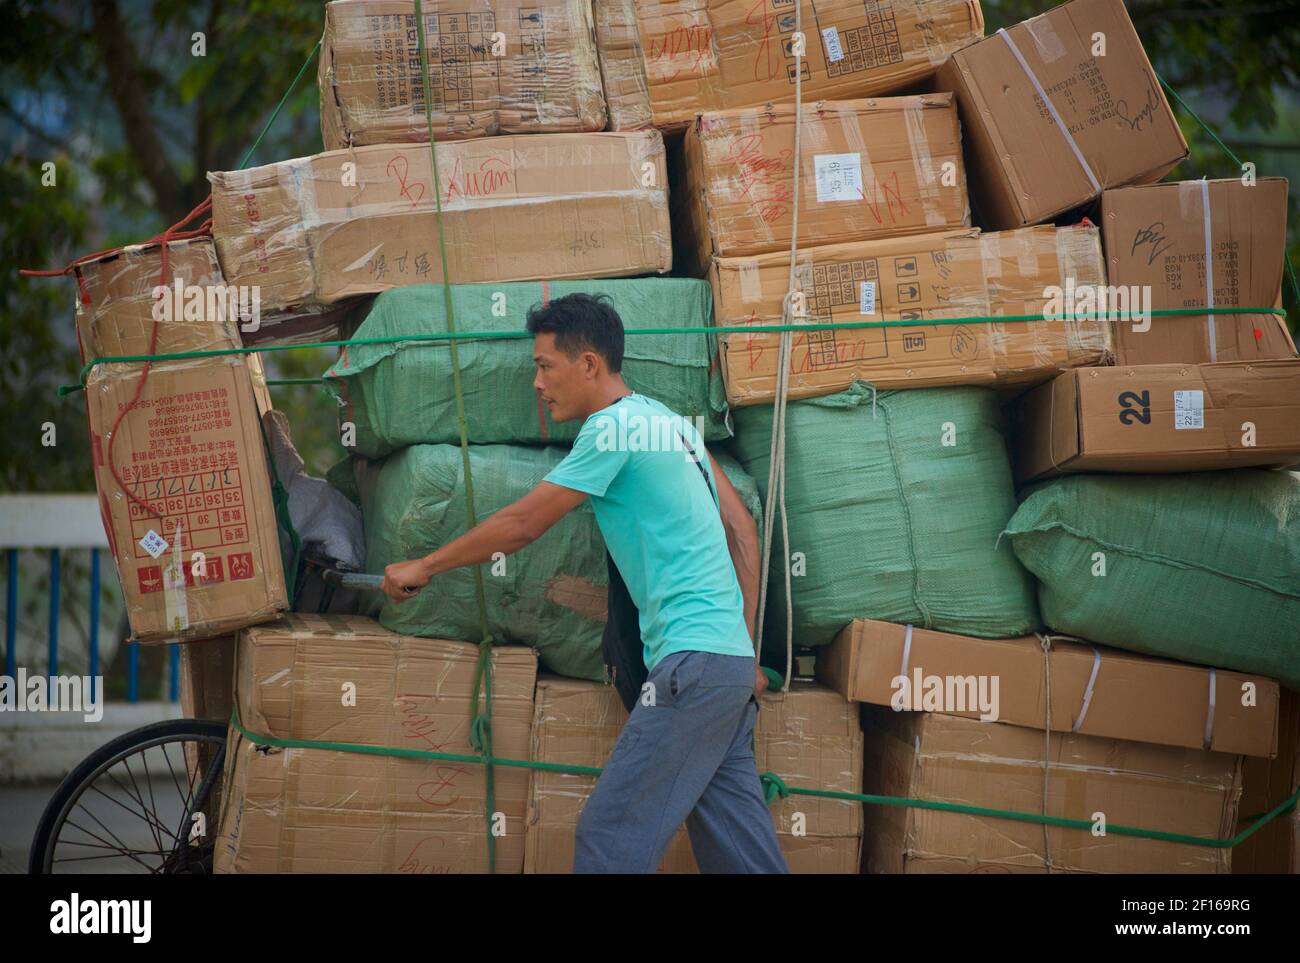 Uomo che trasporta una grande quantità di scatole accatastate in alto sulla sua bicicletta importando attraverso un confine terrestre dalla Cina al Vietnam. Da Hekouzhen a Lao Cai attraverso il ponte di Cau ho Kieu. Foto Stock